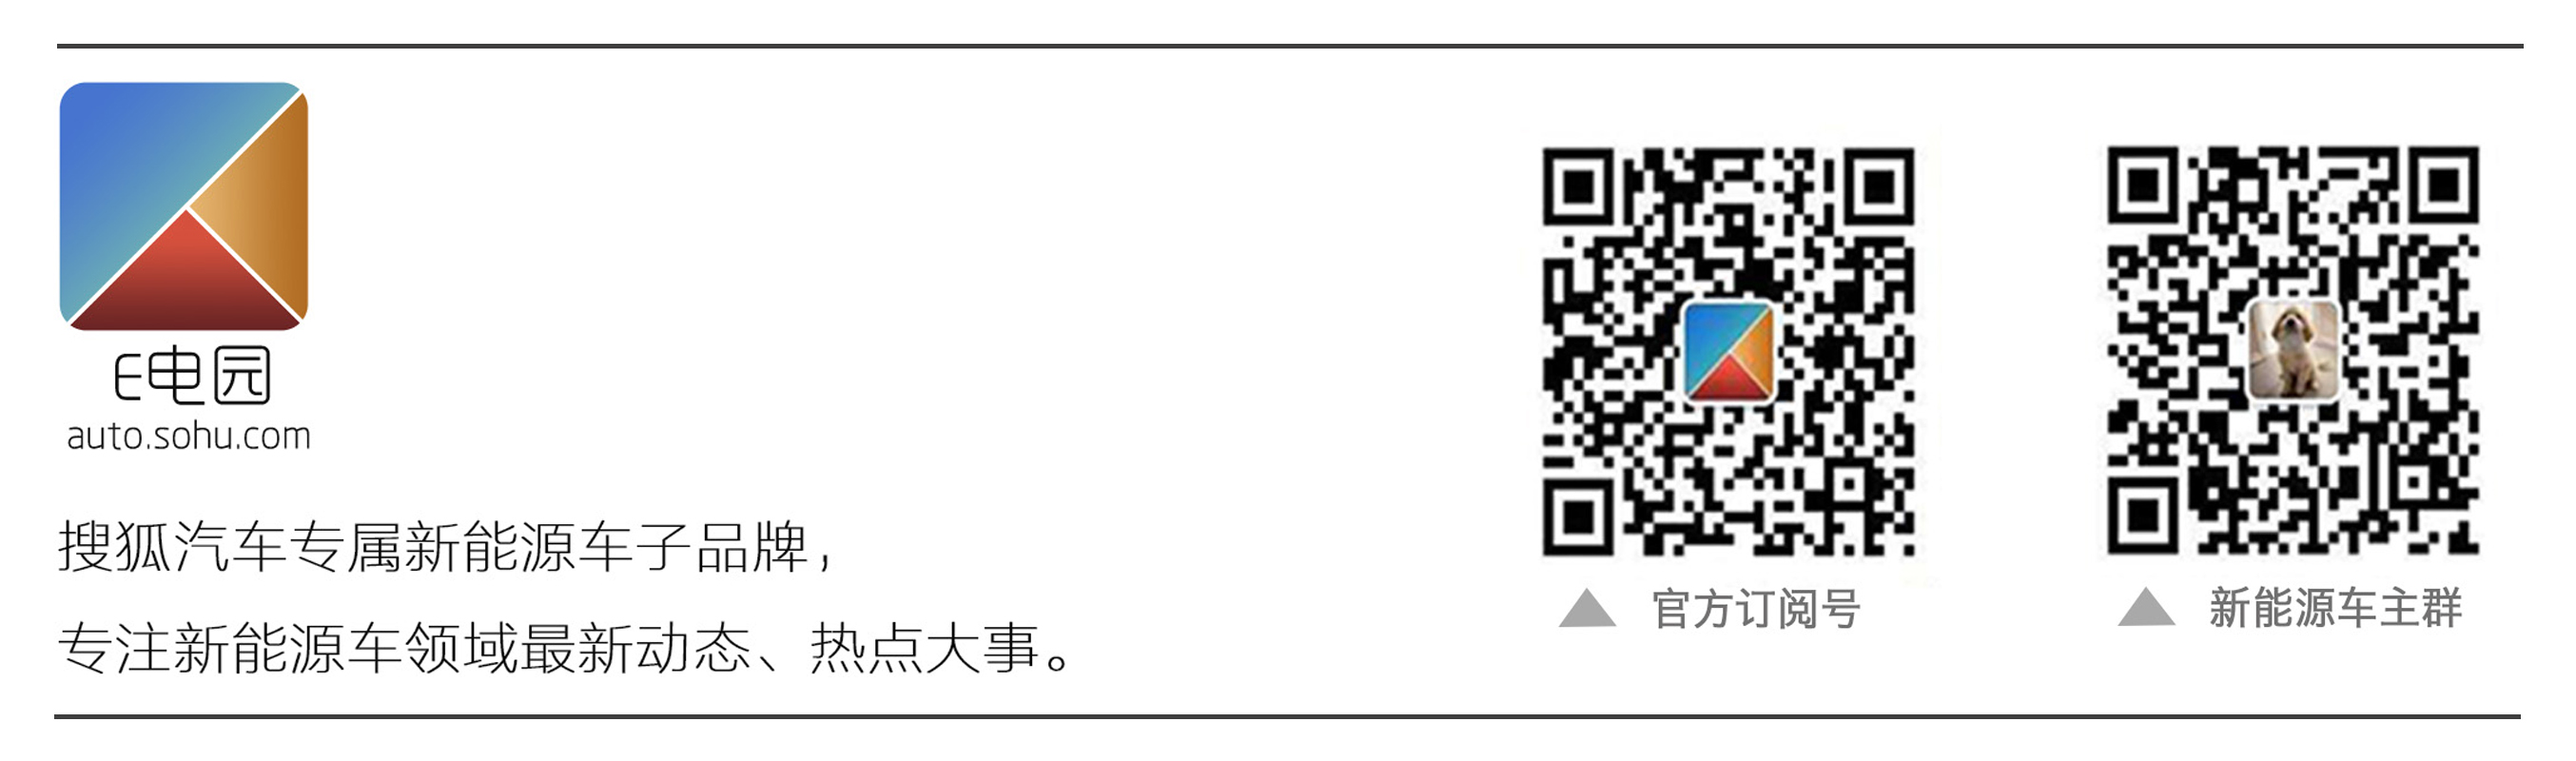 日本大阪免费wifi_最新四色米奇影视777在线看_污动漫